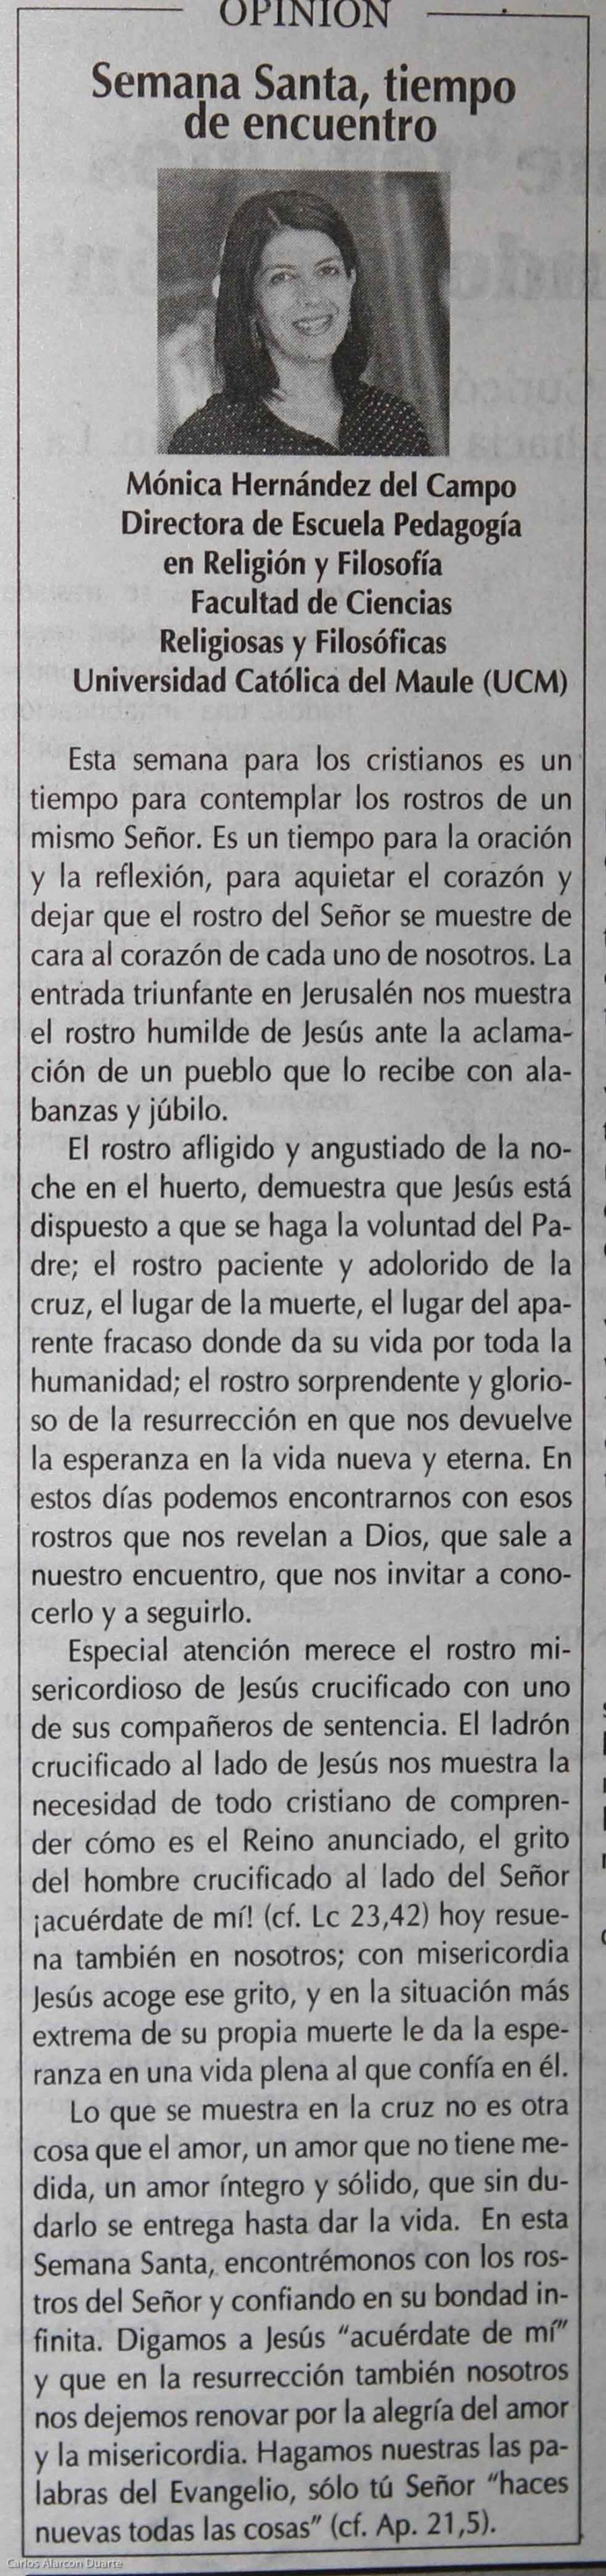 16 de abril en Diario El Centro: “Semana Santa, tiempo de encuentro”